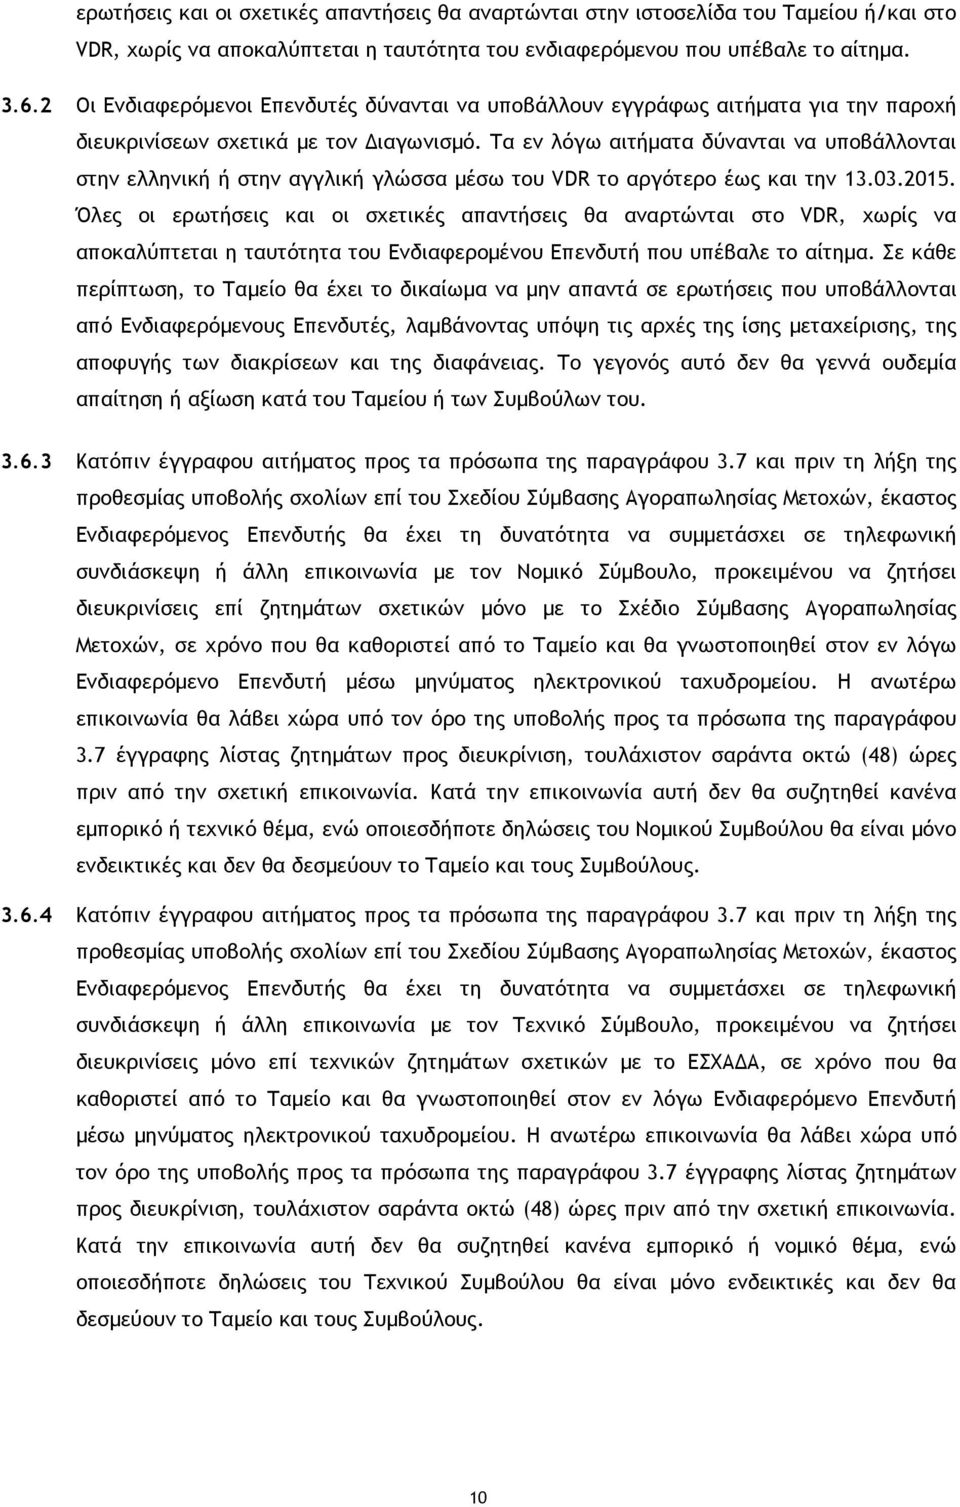 Τα εν λόγω αιτήµατα δύνανται να υποβάλλονται στην ελληνική ή στην αγγλική γλώσσα µέσω του VDR το αργότερο έως και την 13.03.2015.